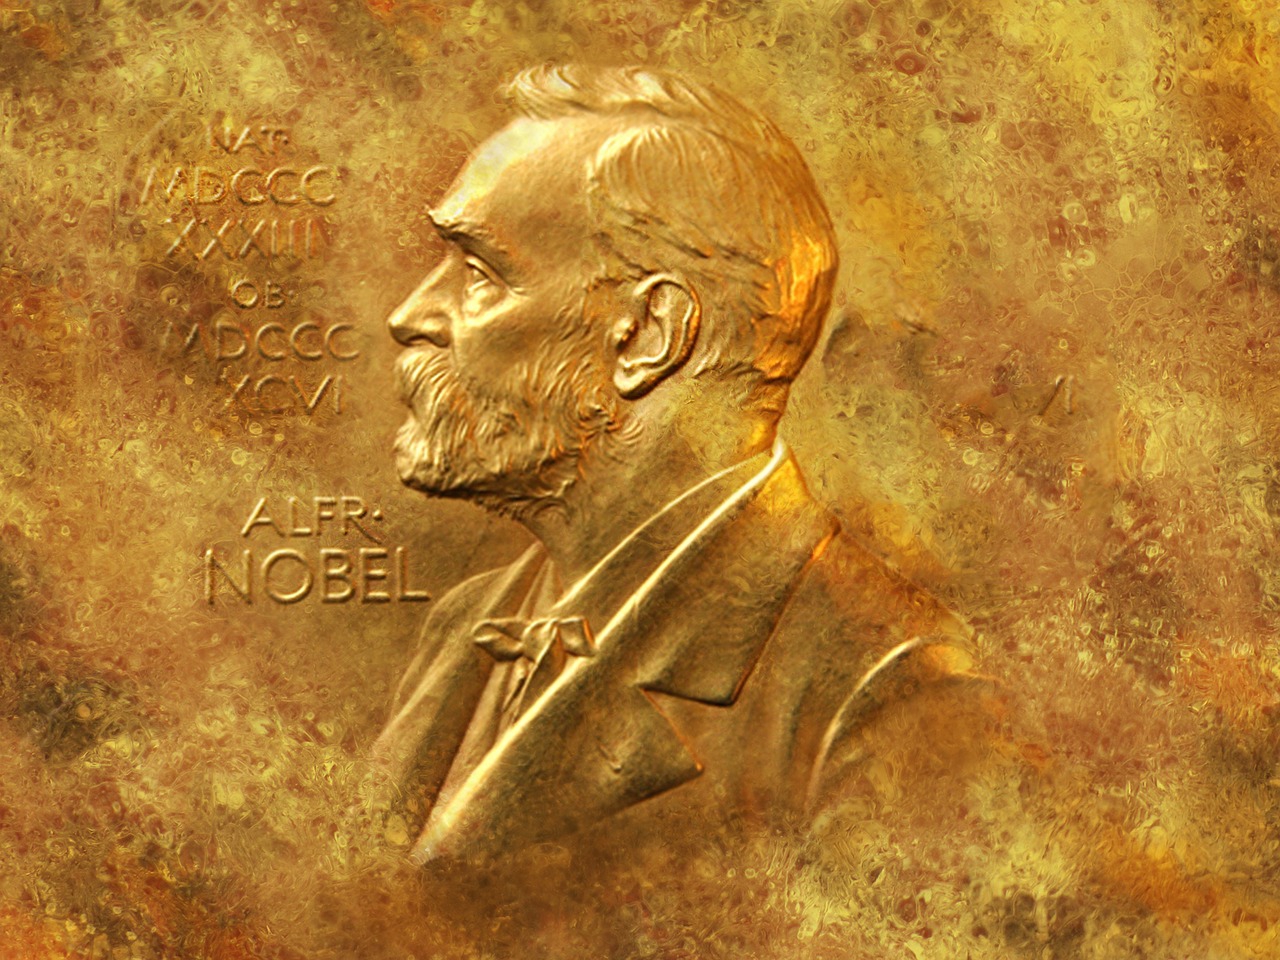  Нобелевскую премию 2017 по физике вручили в Стокгольме - фото 1